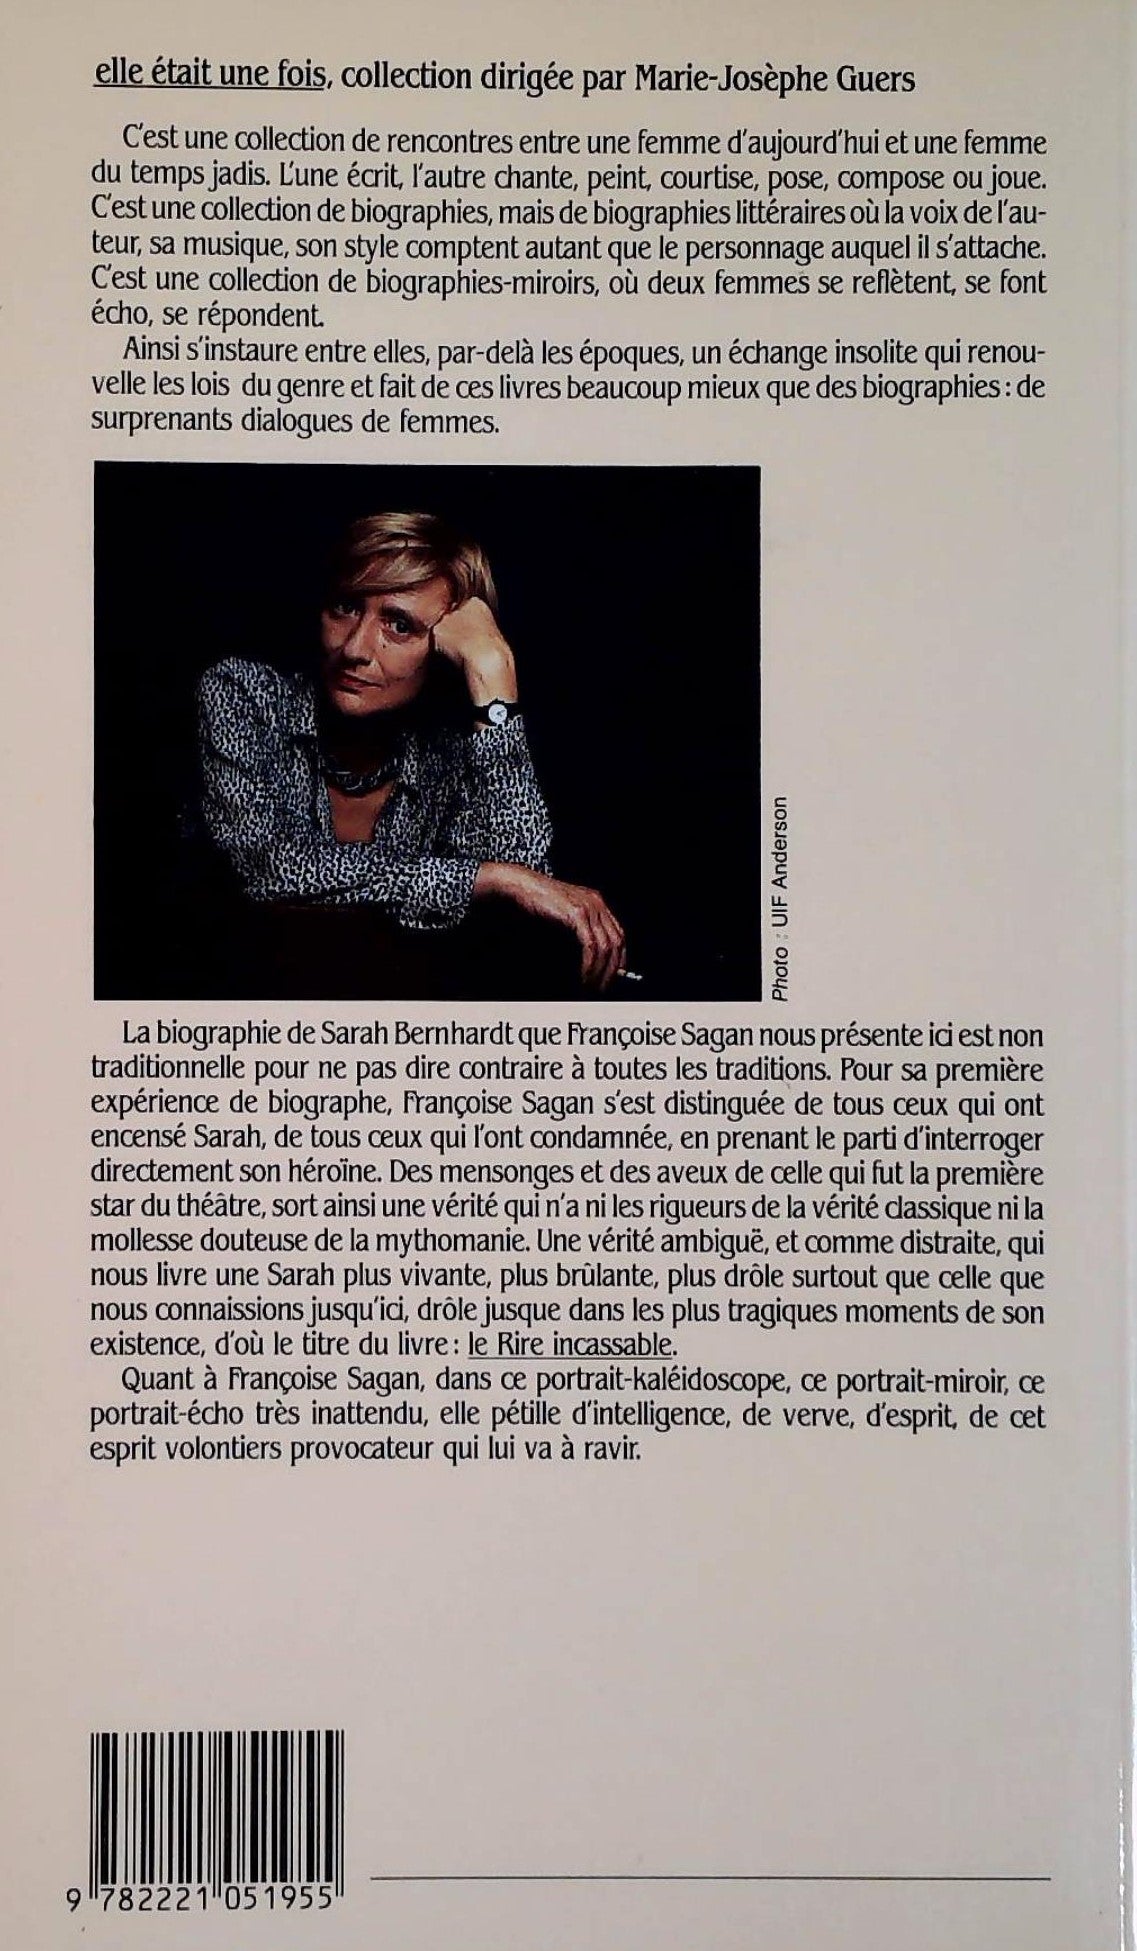 Elle était une fois : Sarah Bernhard, le rire incassable (Françoise Sagan)